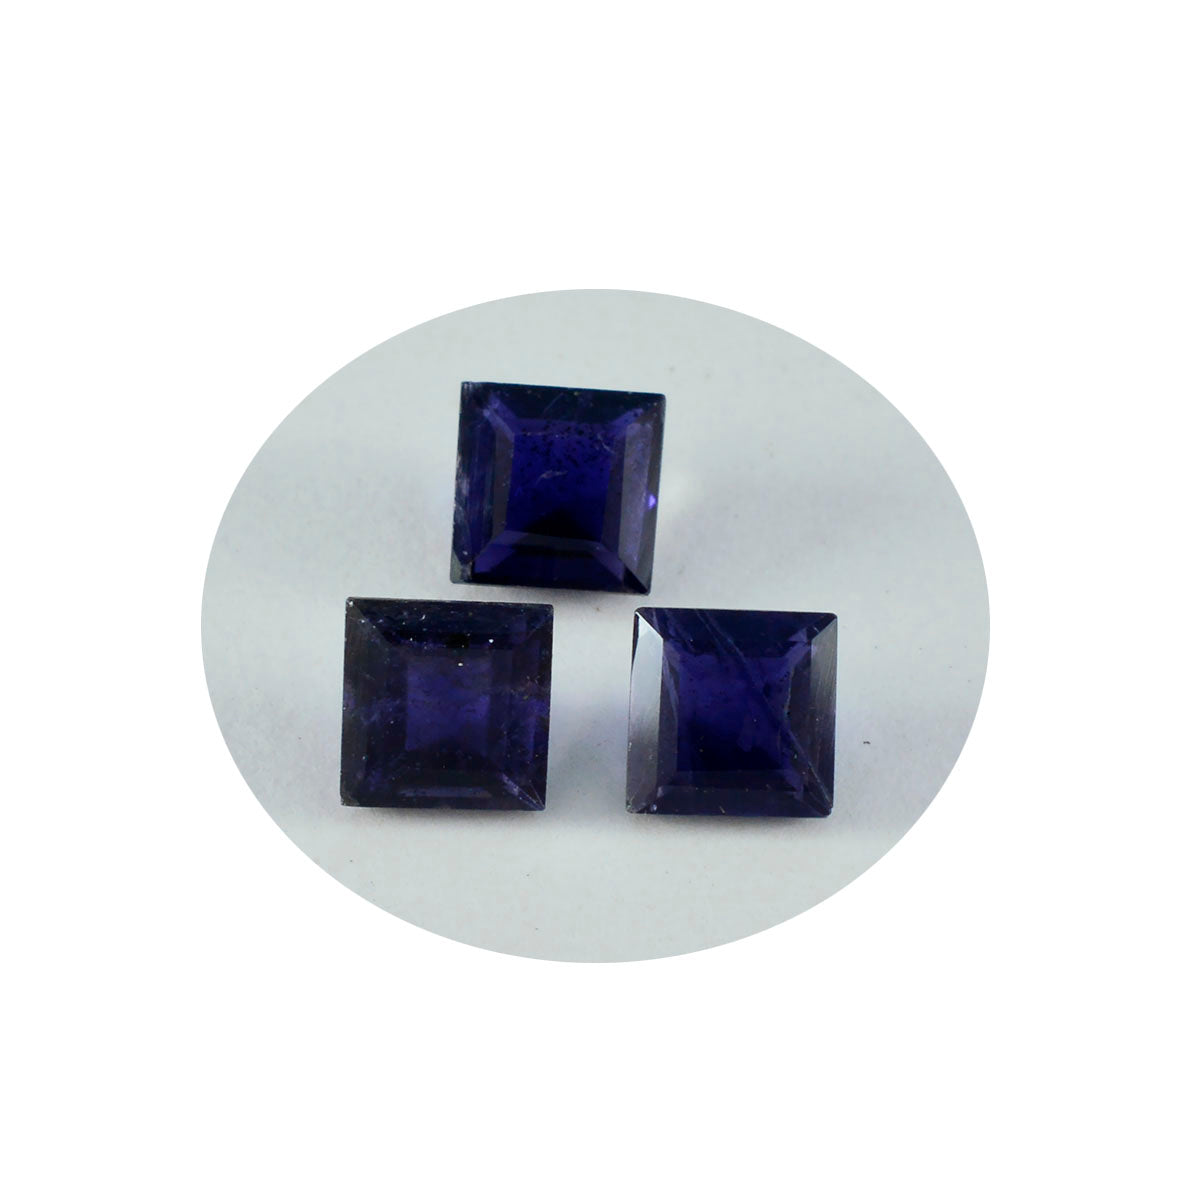 Riyogems 1PC blauwe ioliet gefacetteerd 11x11 mm vierkante vorm mooie kwaliteit losse edelsteen